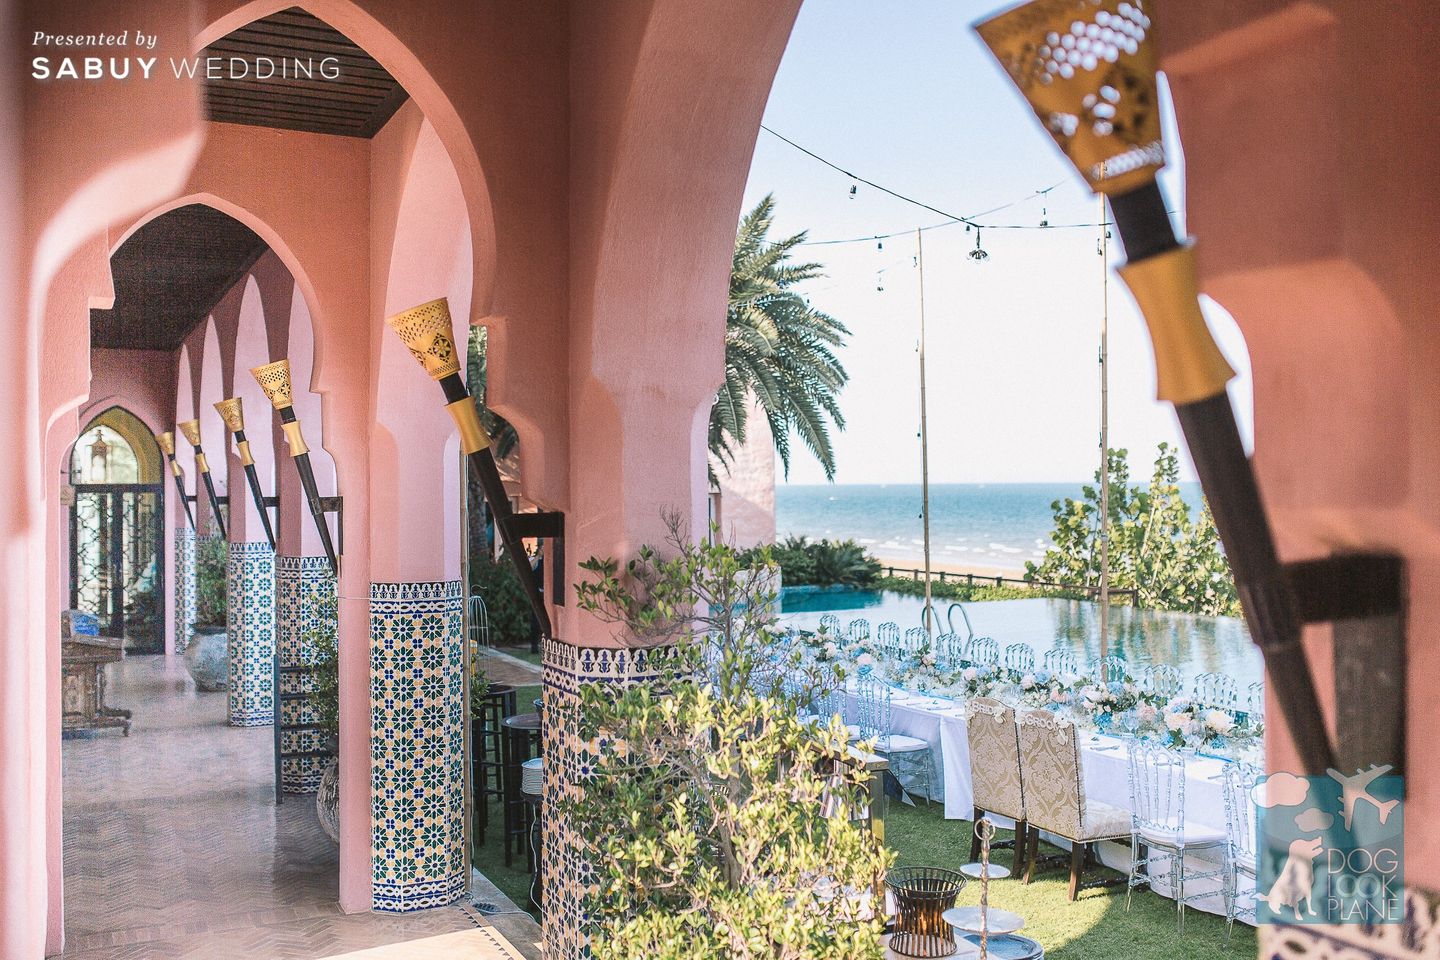 สถานที่จัดงานแต่งงาน,สถานที่แต่งงาน,งานแต่งริมทะเล,long-table,งานแต่งชายทะเล รีวิวงานแต่งสวยพลิ้วริมทะเล เก๋ด้วยบิกินี่รอบกองไฟ @Villa Maroc Resort